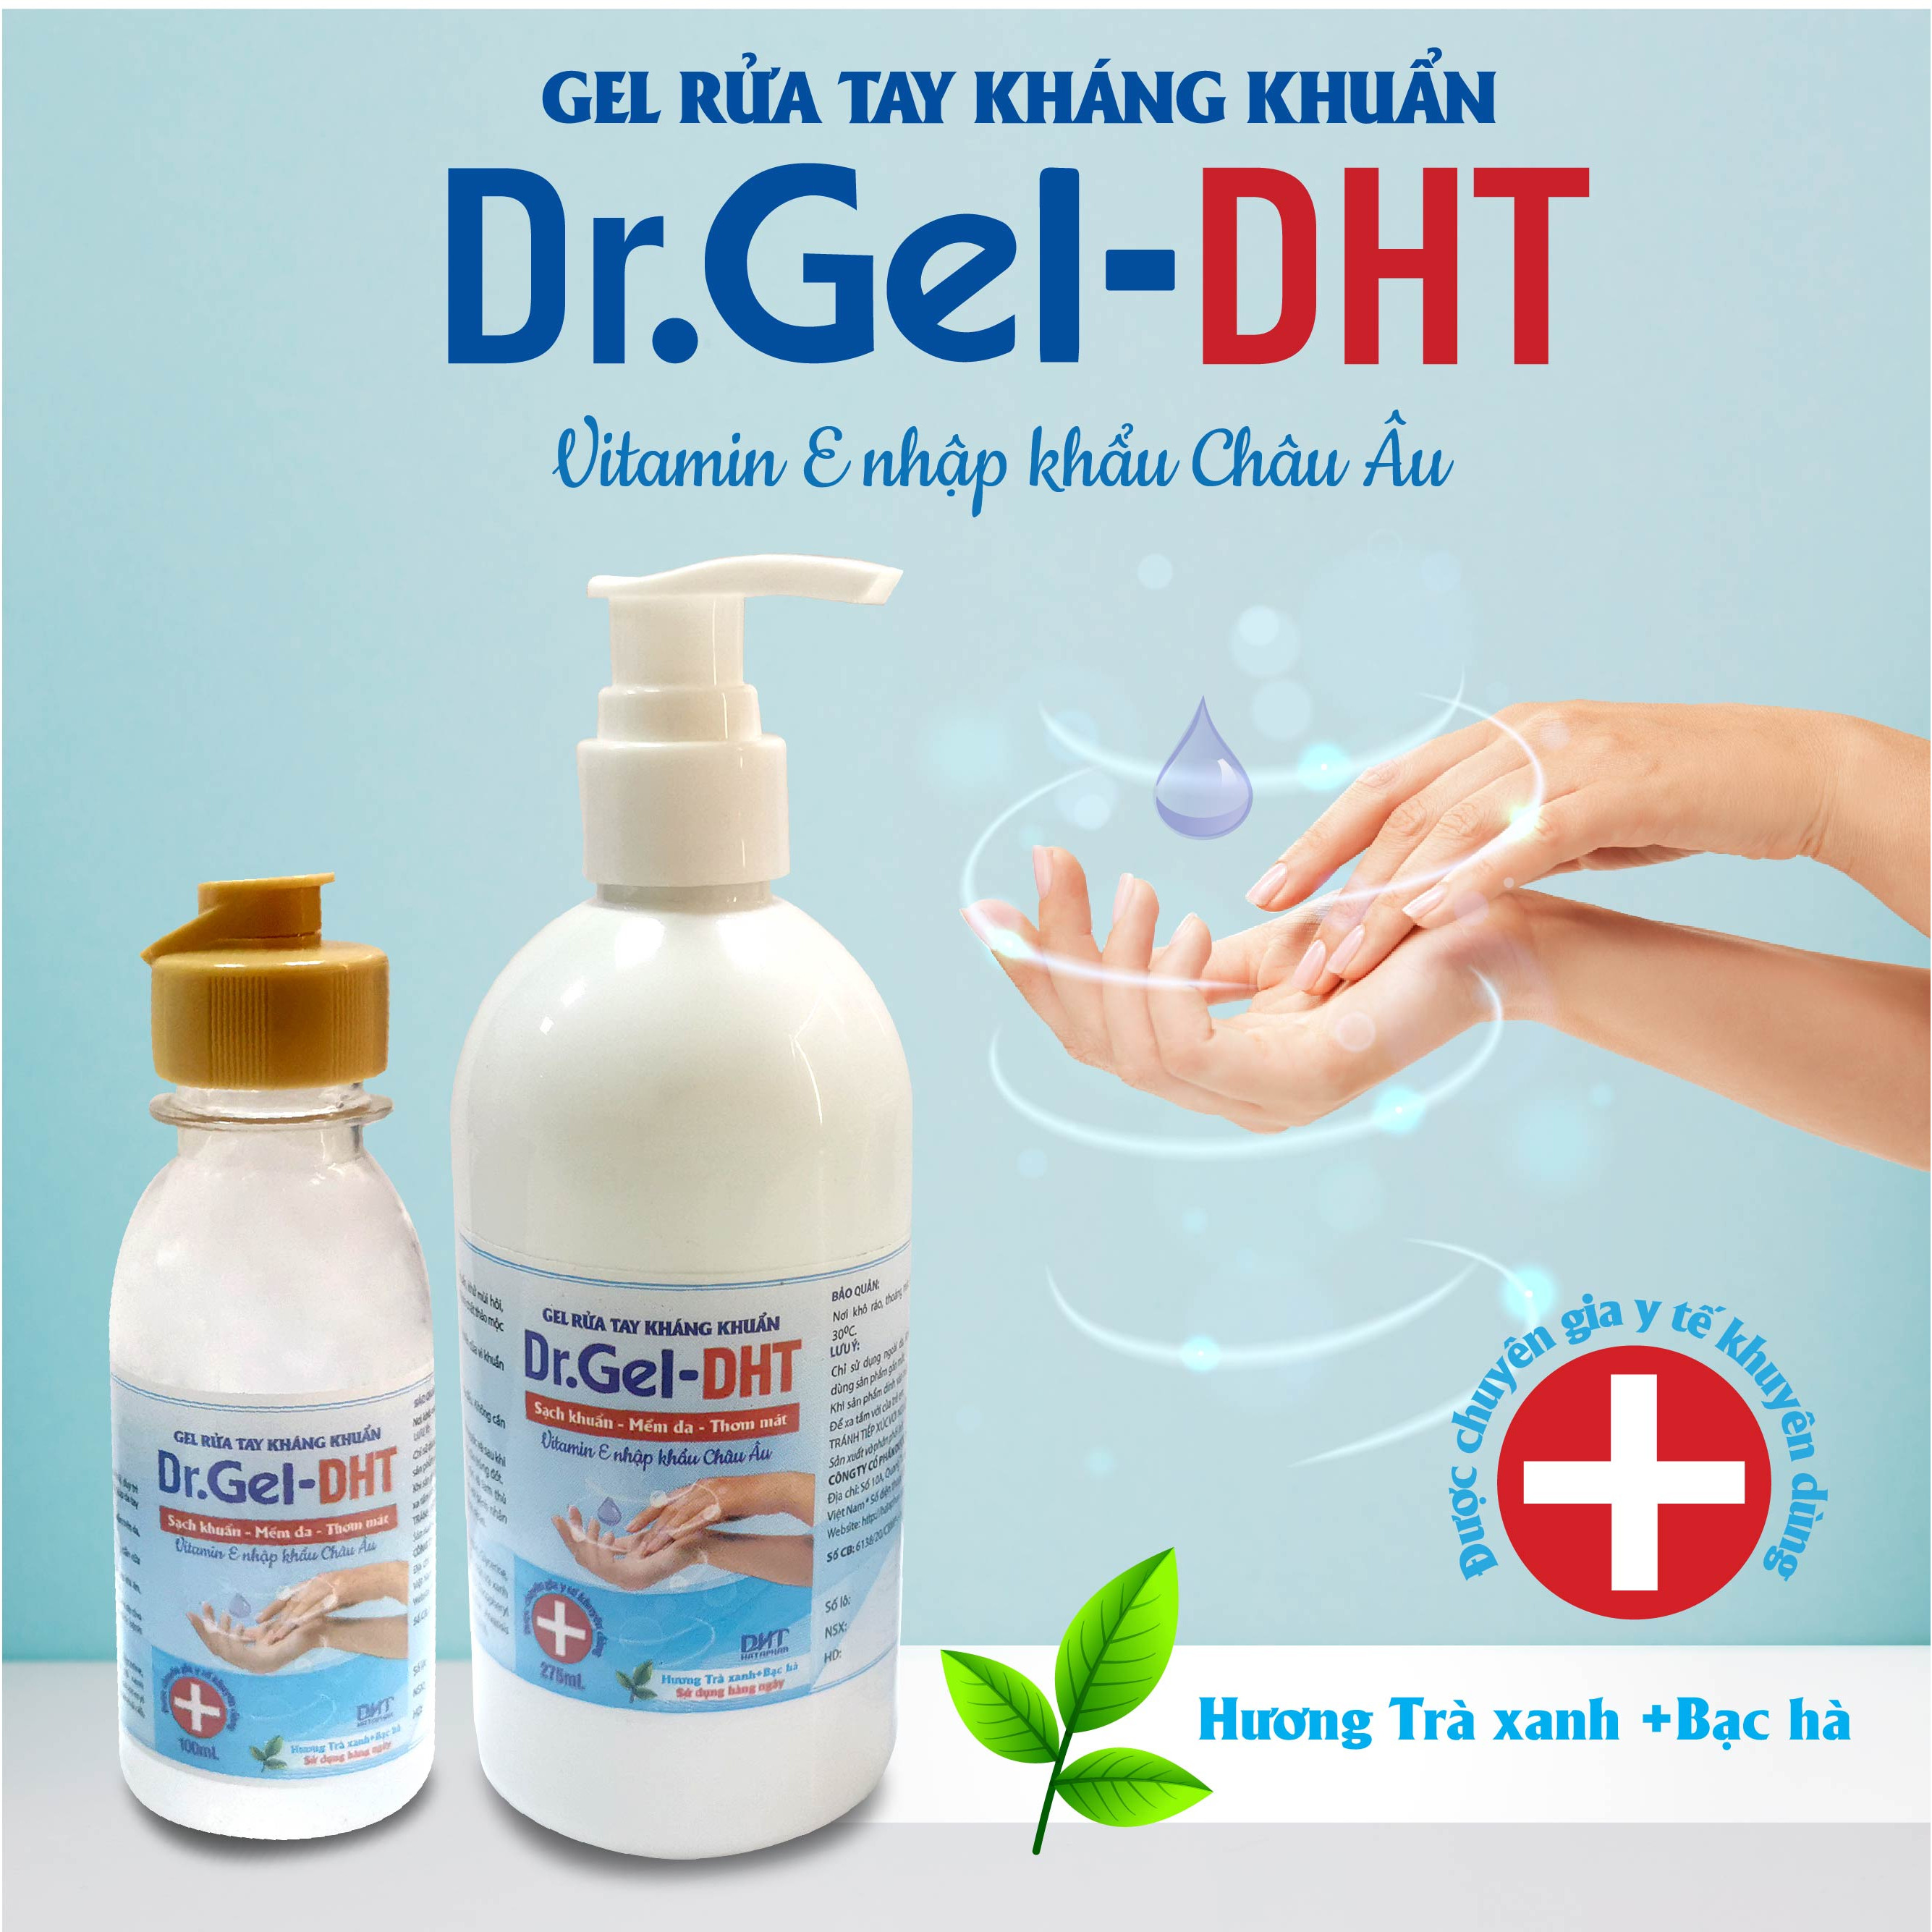 Gel rửa tay khô kháng khuẩn nhanh Dr.Gel DHT